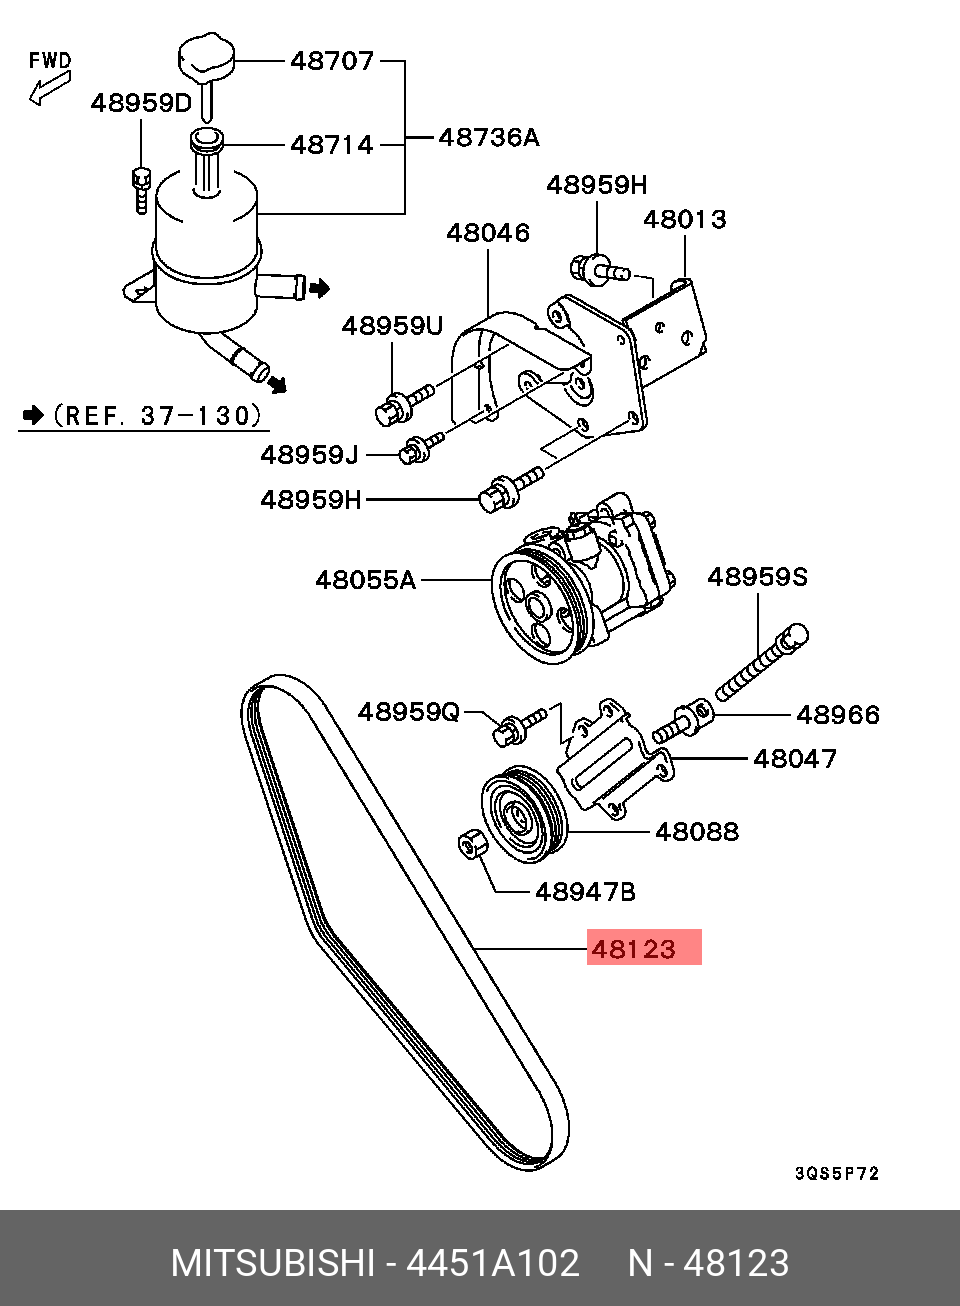 Ремень поликлиновый - Mitsubishi 4451A102